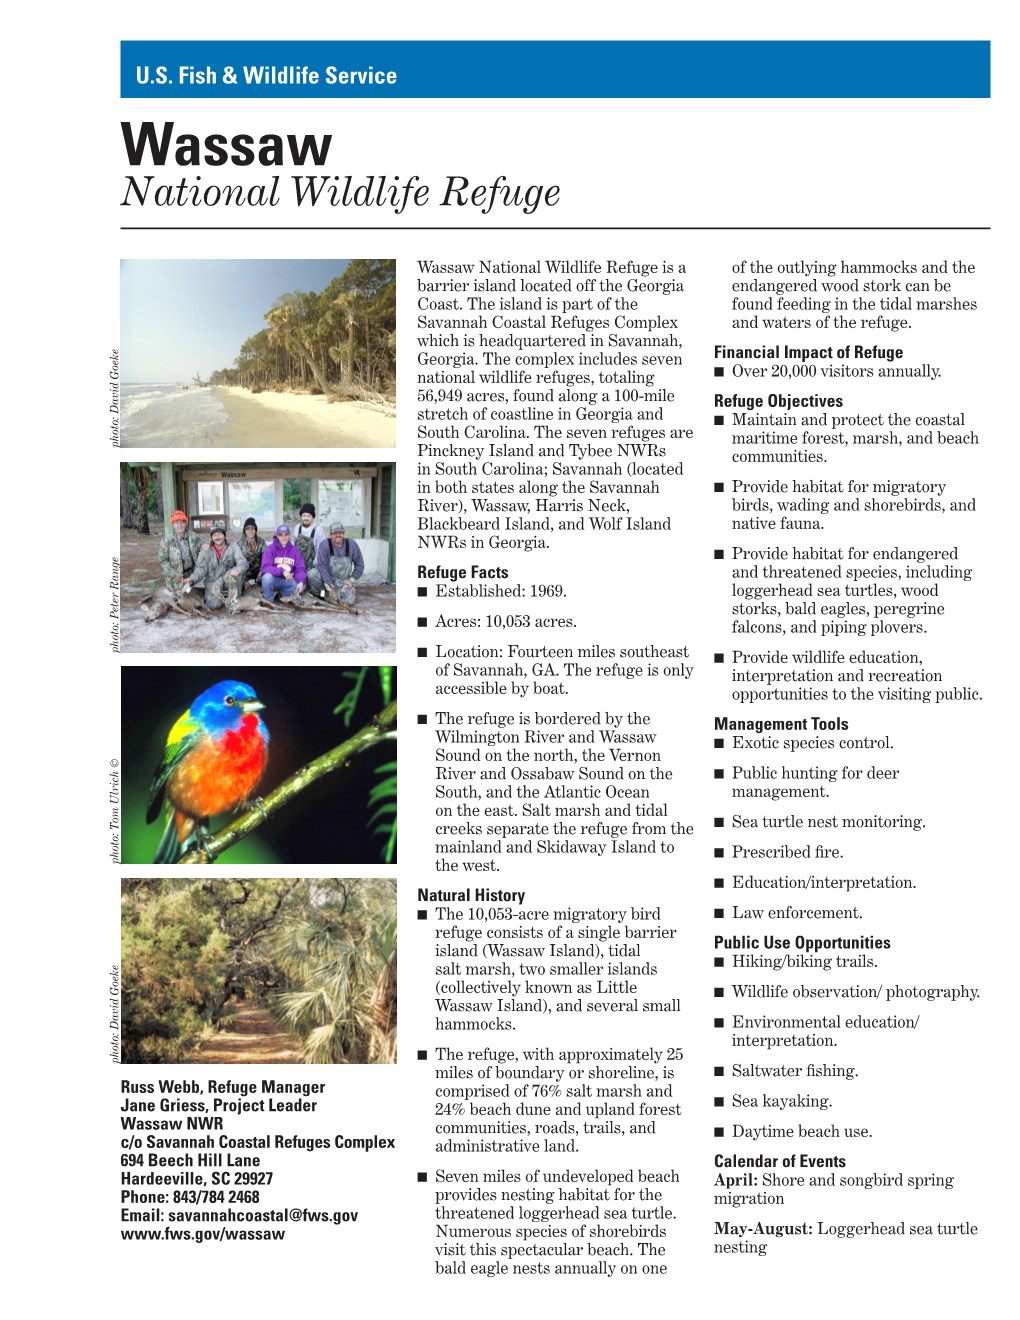 Wassaw National Wildlife Refuge